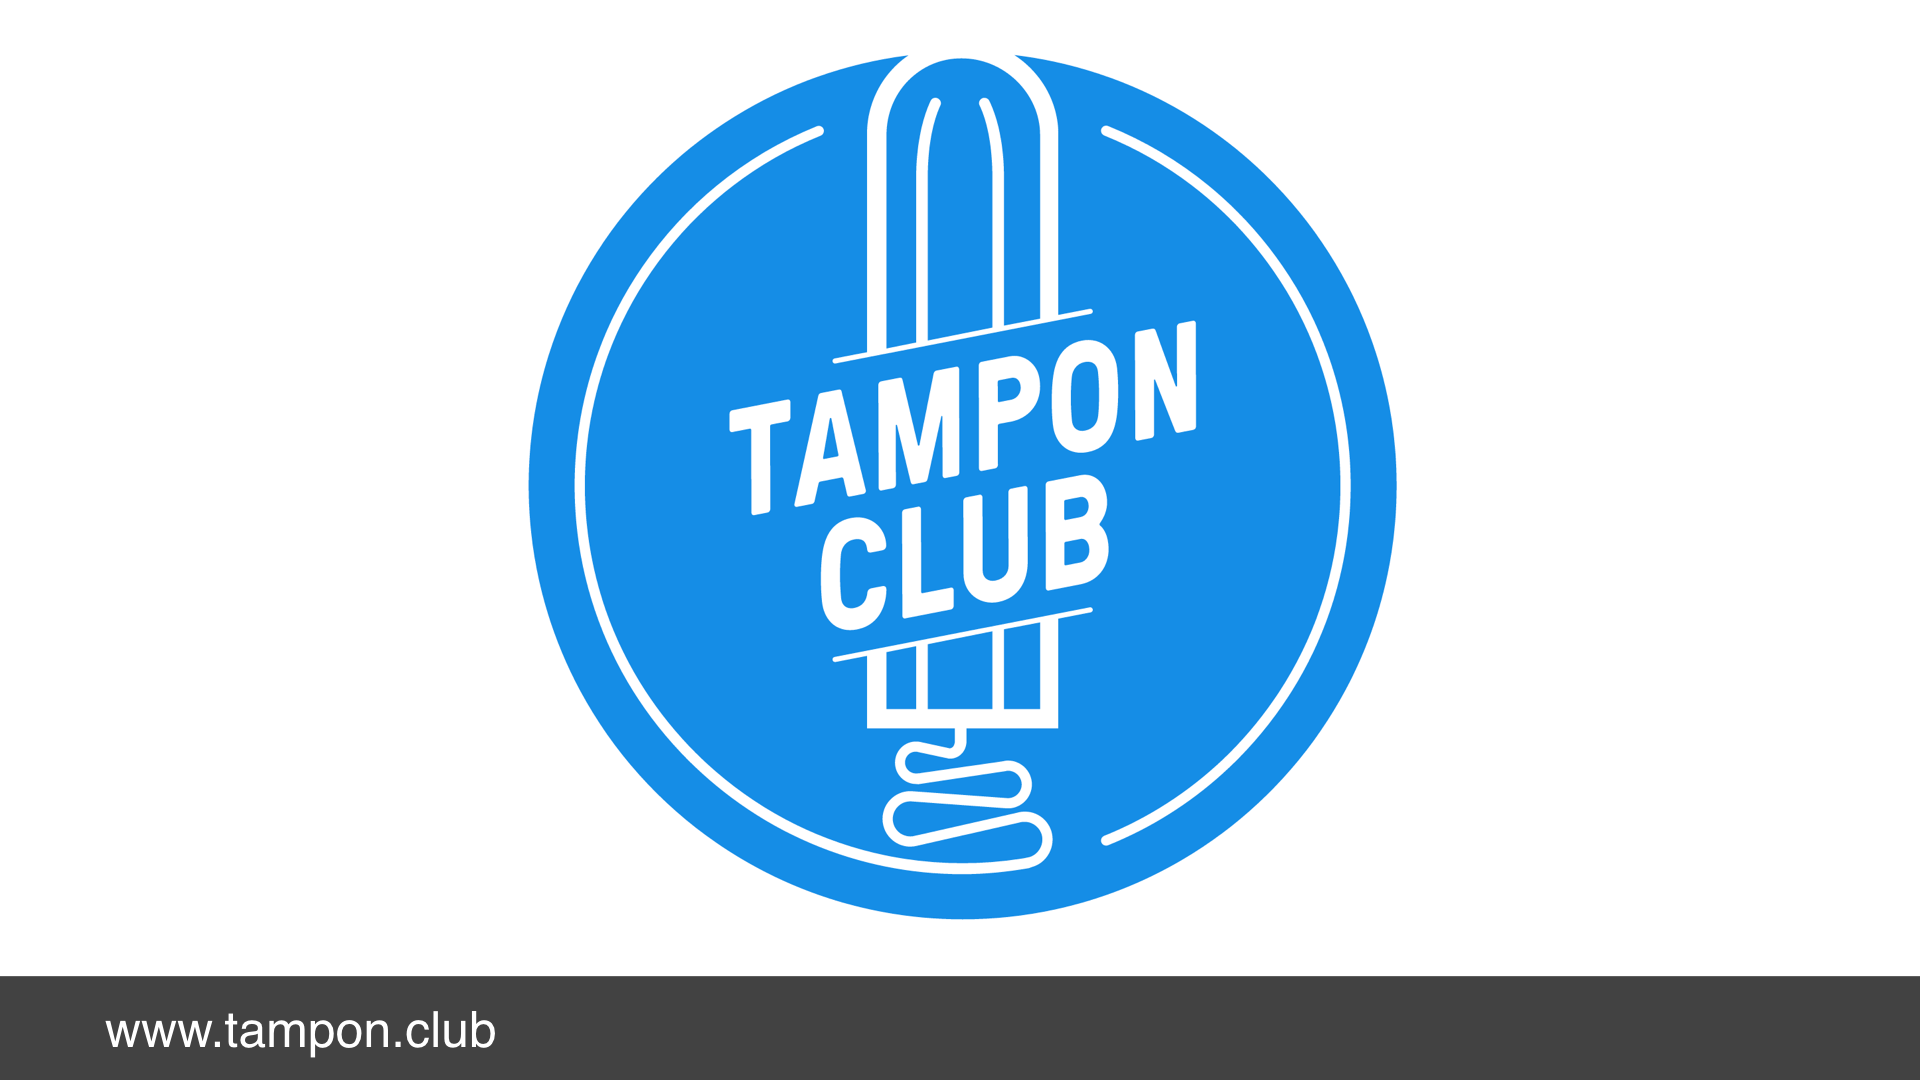 'Tampon club' logo